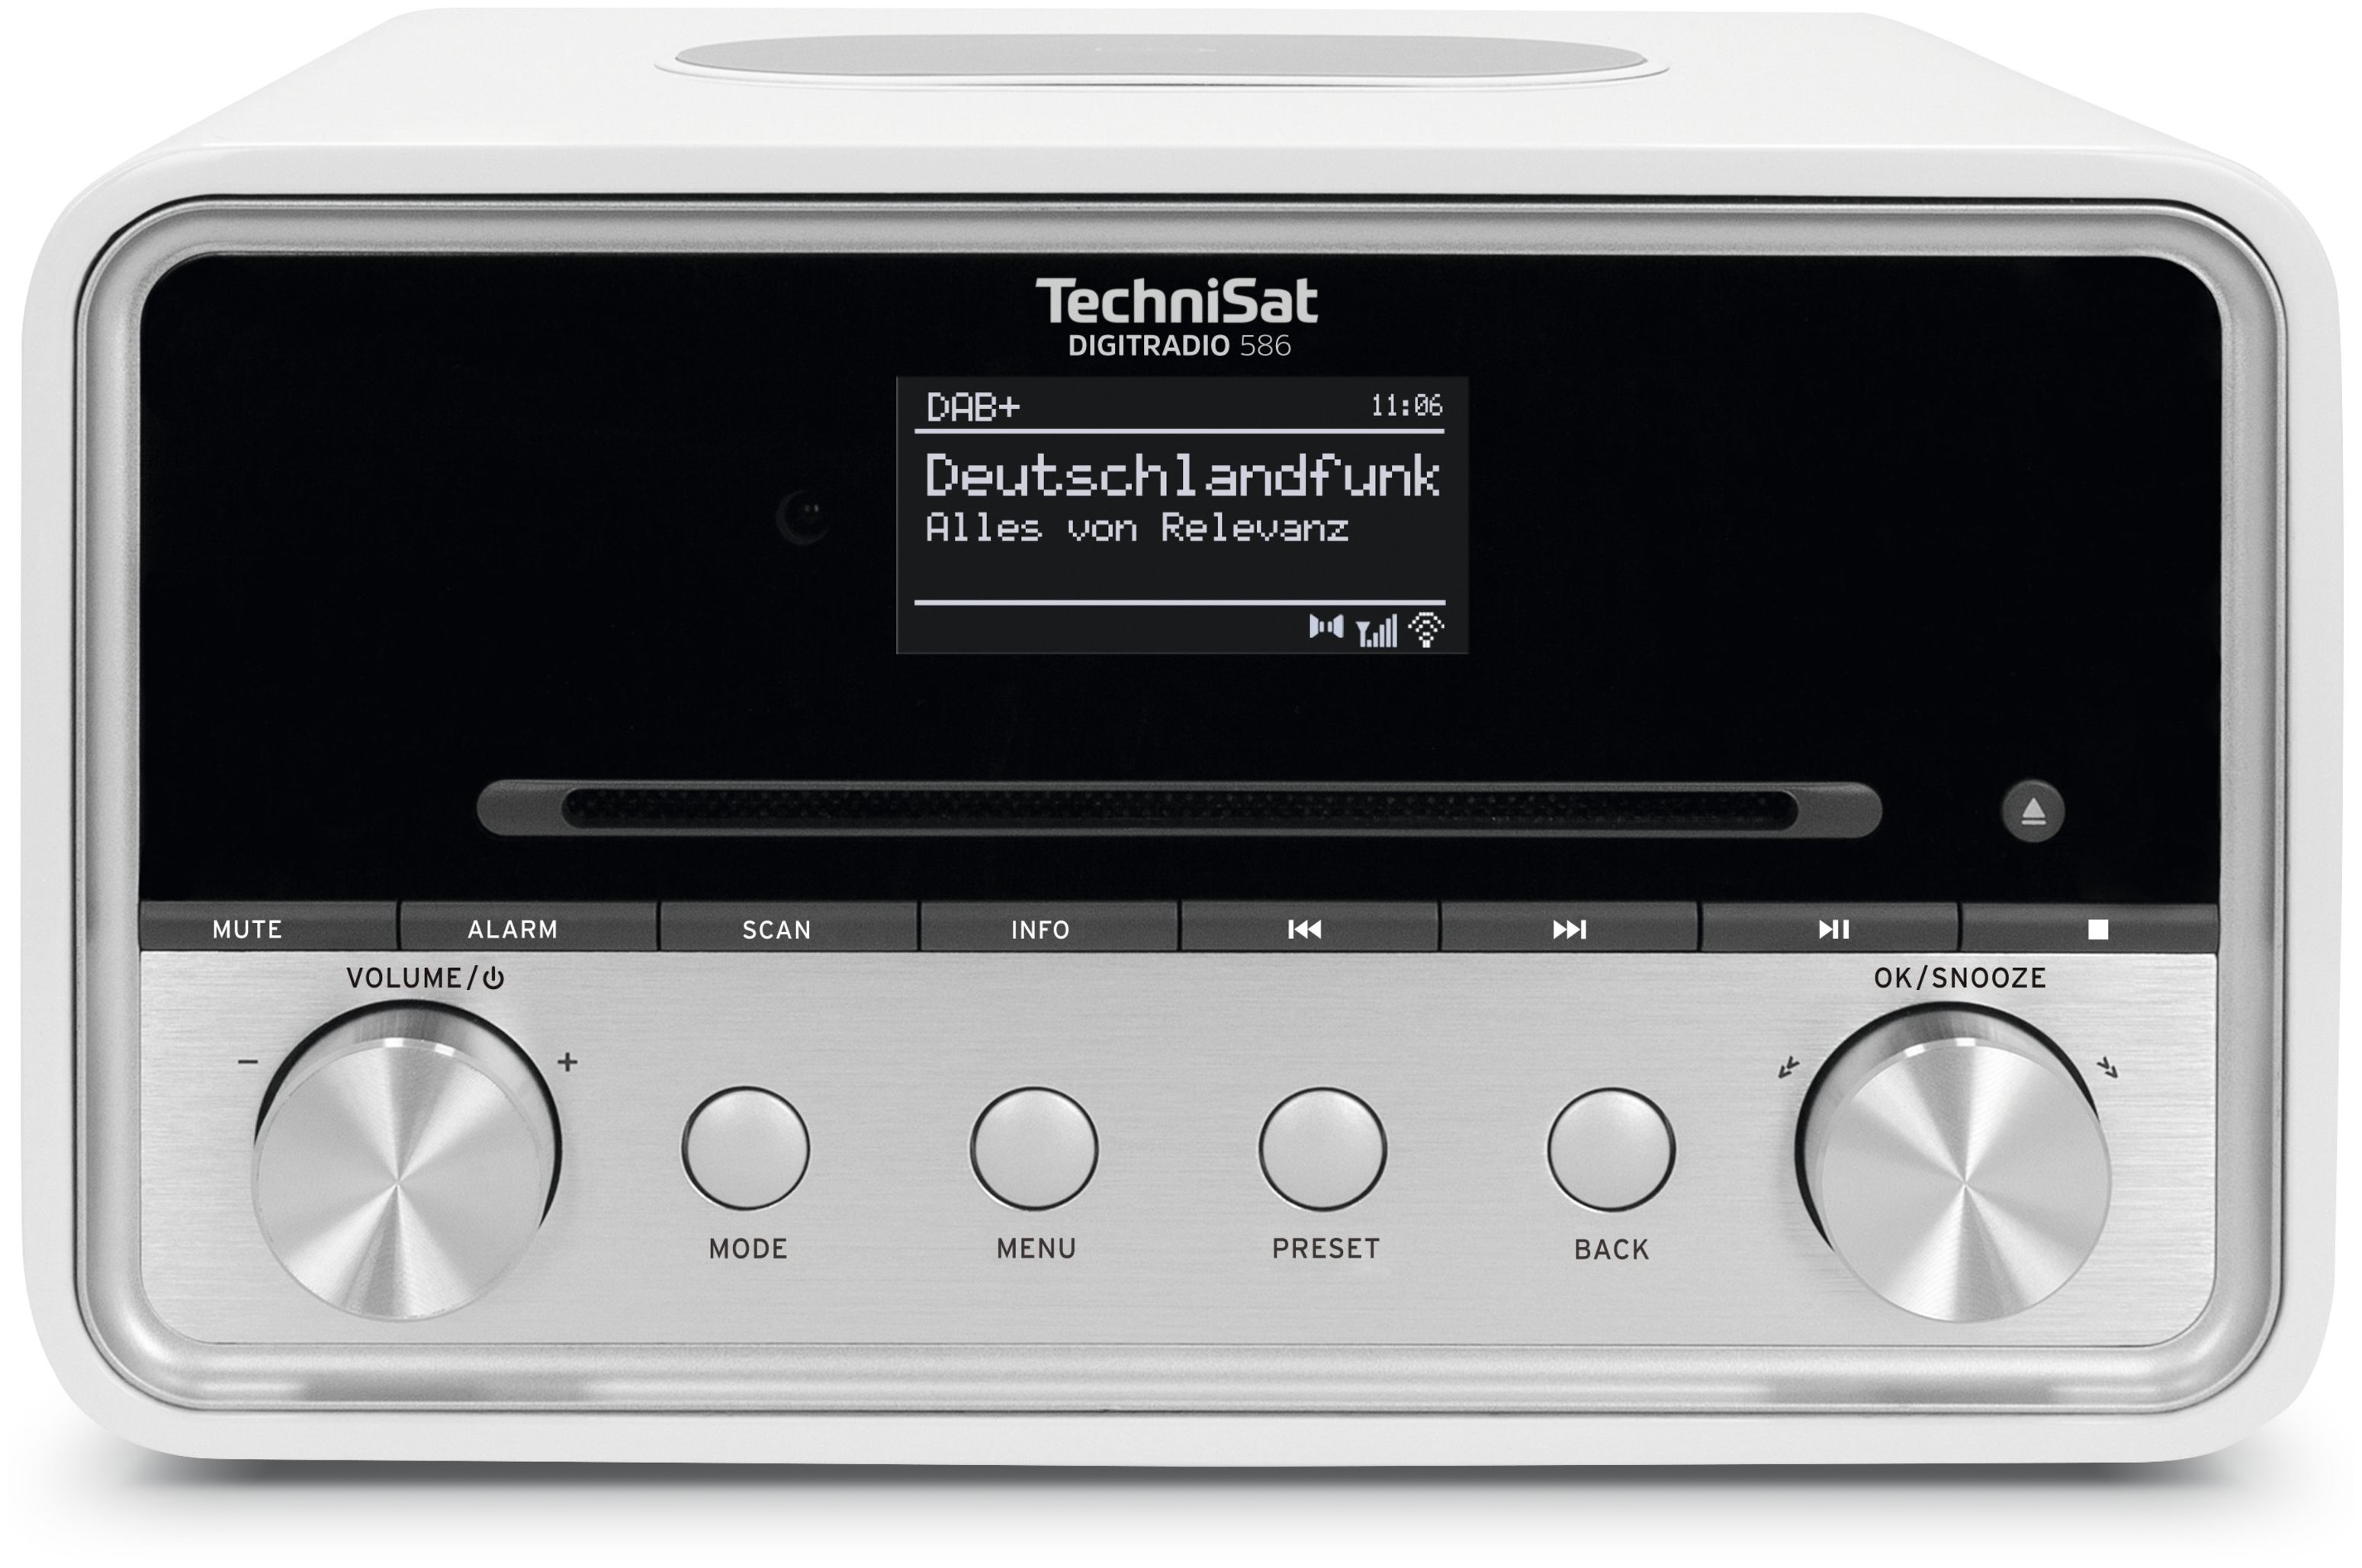 TechniSat Digitradio von (Weiß) expert 586 Radio DAB+, Bluetooth FM Technomarkt Persönlich